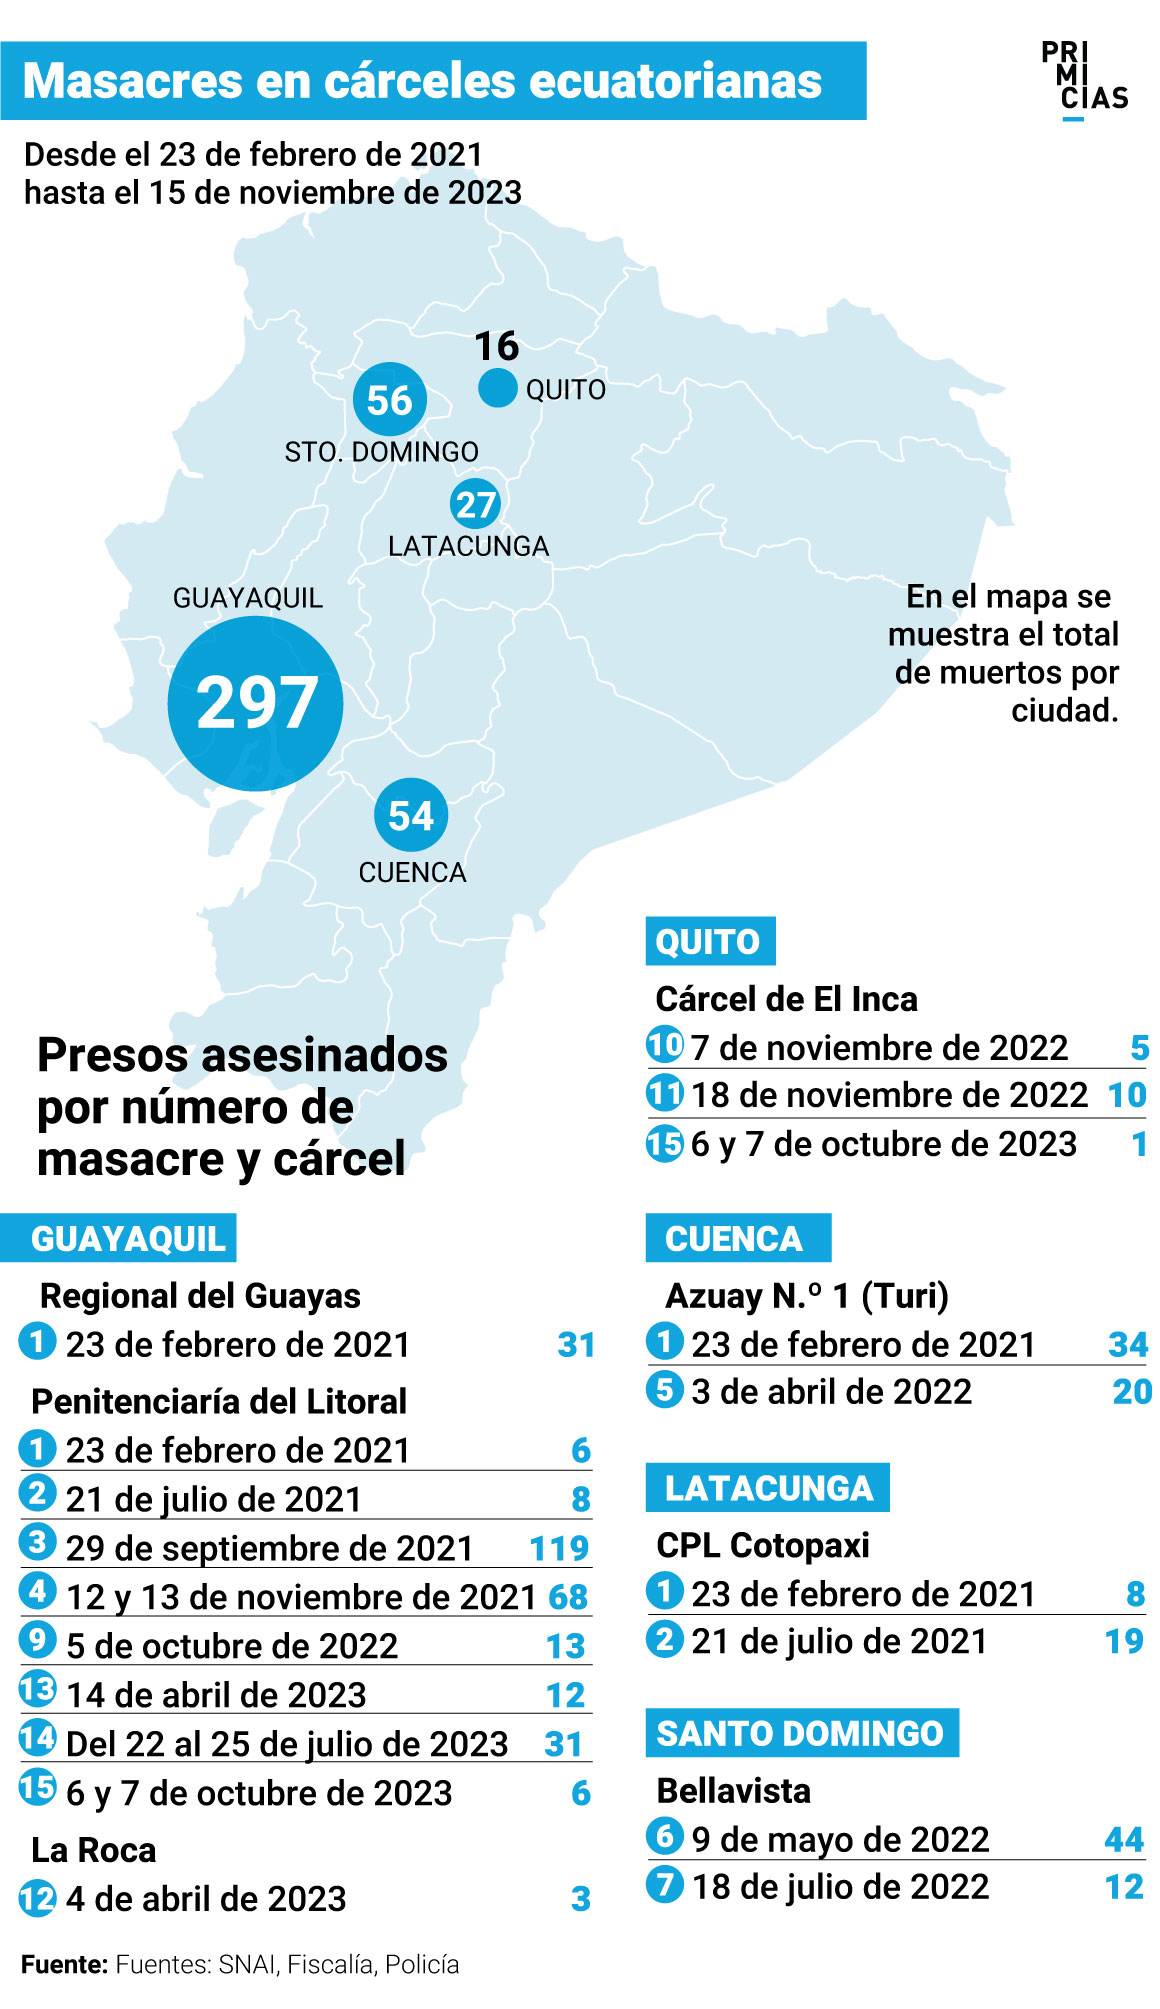 Masacres en cárceles de Ecuador entre 2021 y 2023